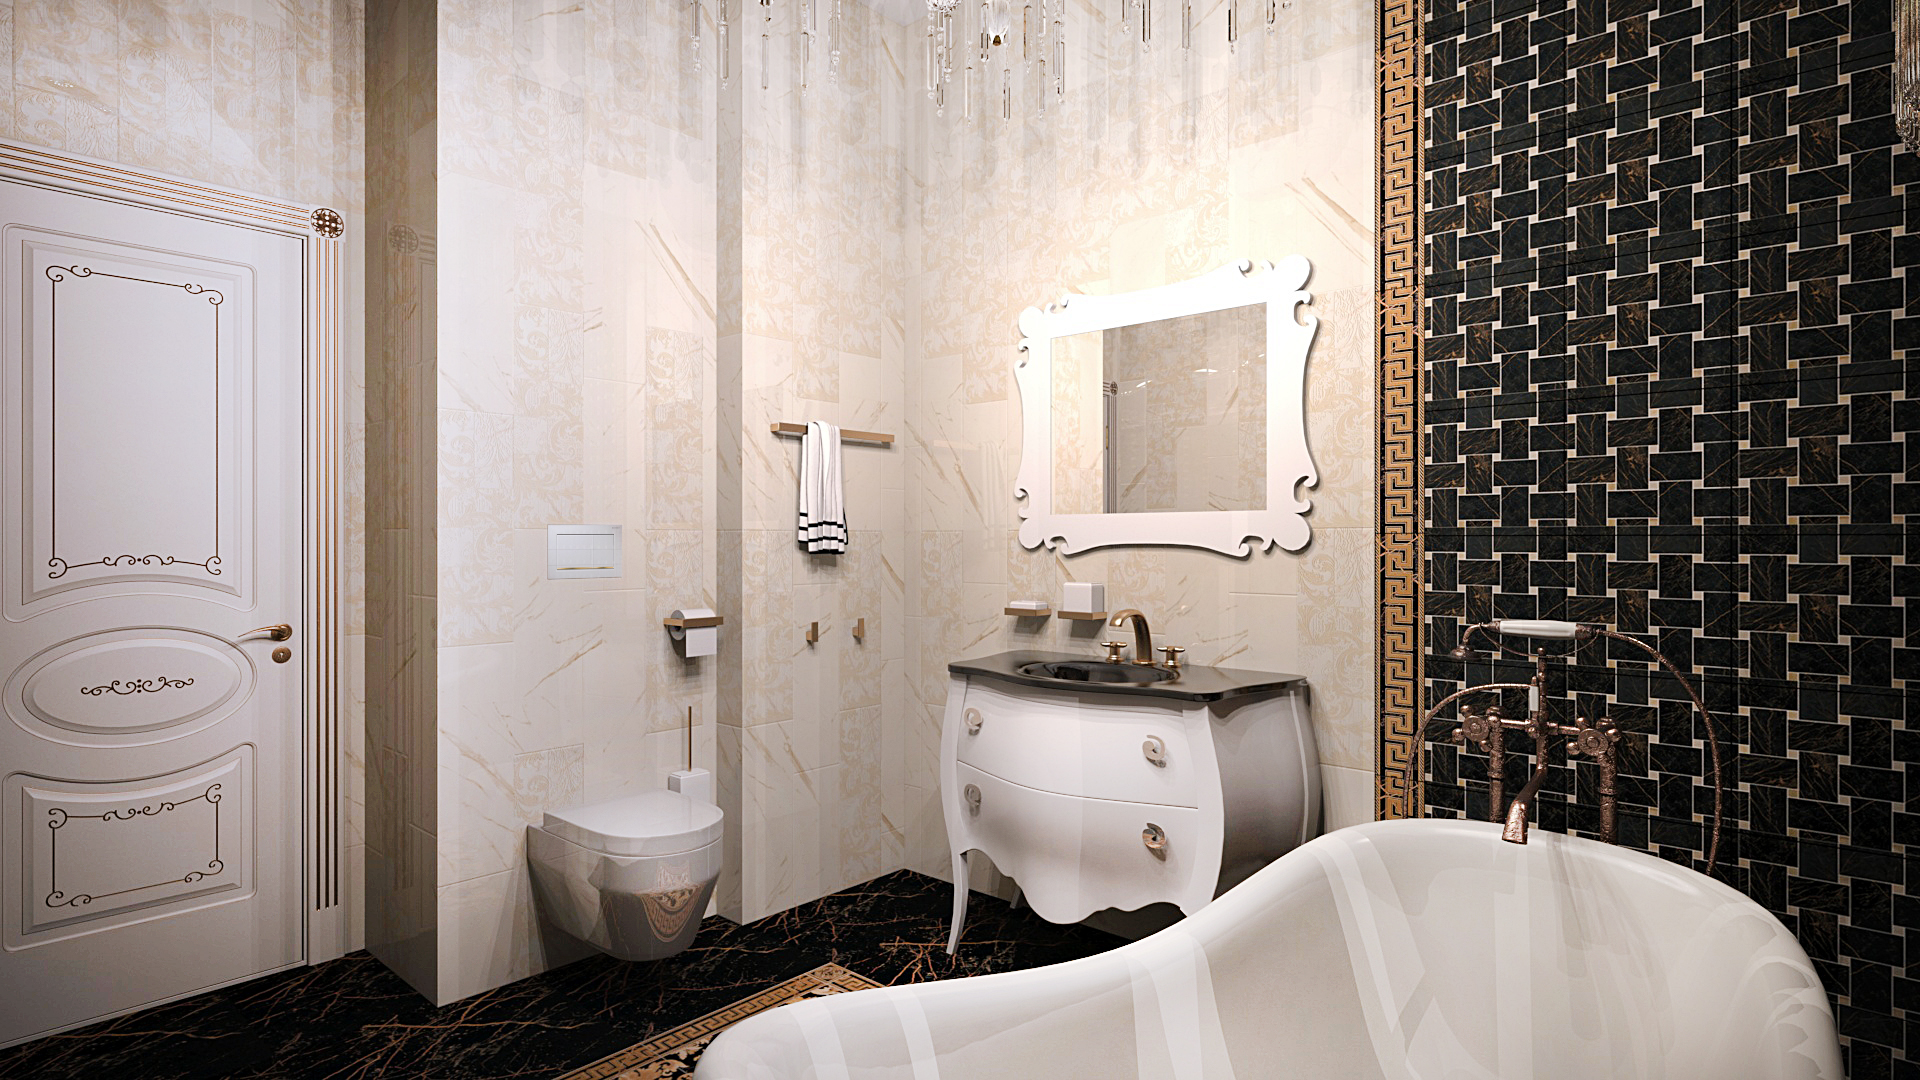 дизайн ванной комнаты, дизайн плитки, дизайн интерьера, дизайн плитки VERSACE, дизайн ванной под ключ